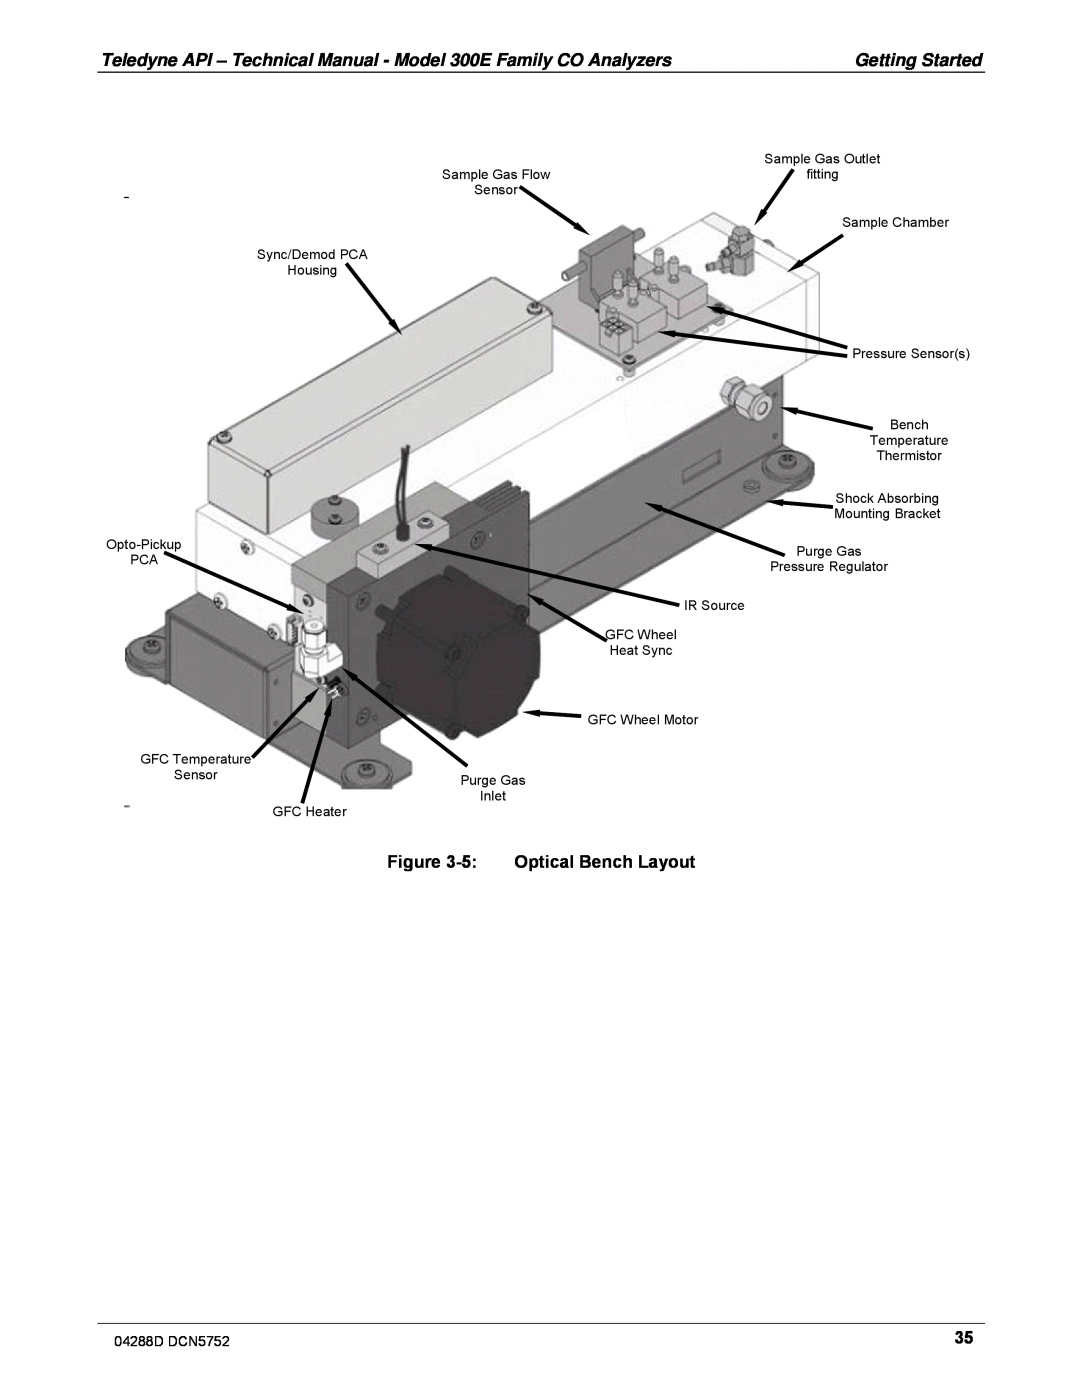 Teledyne M300EM operation manual 5:Optical Bench Layout 